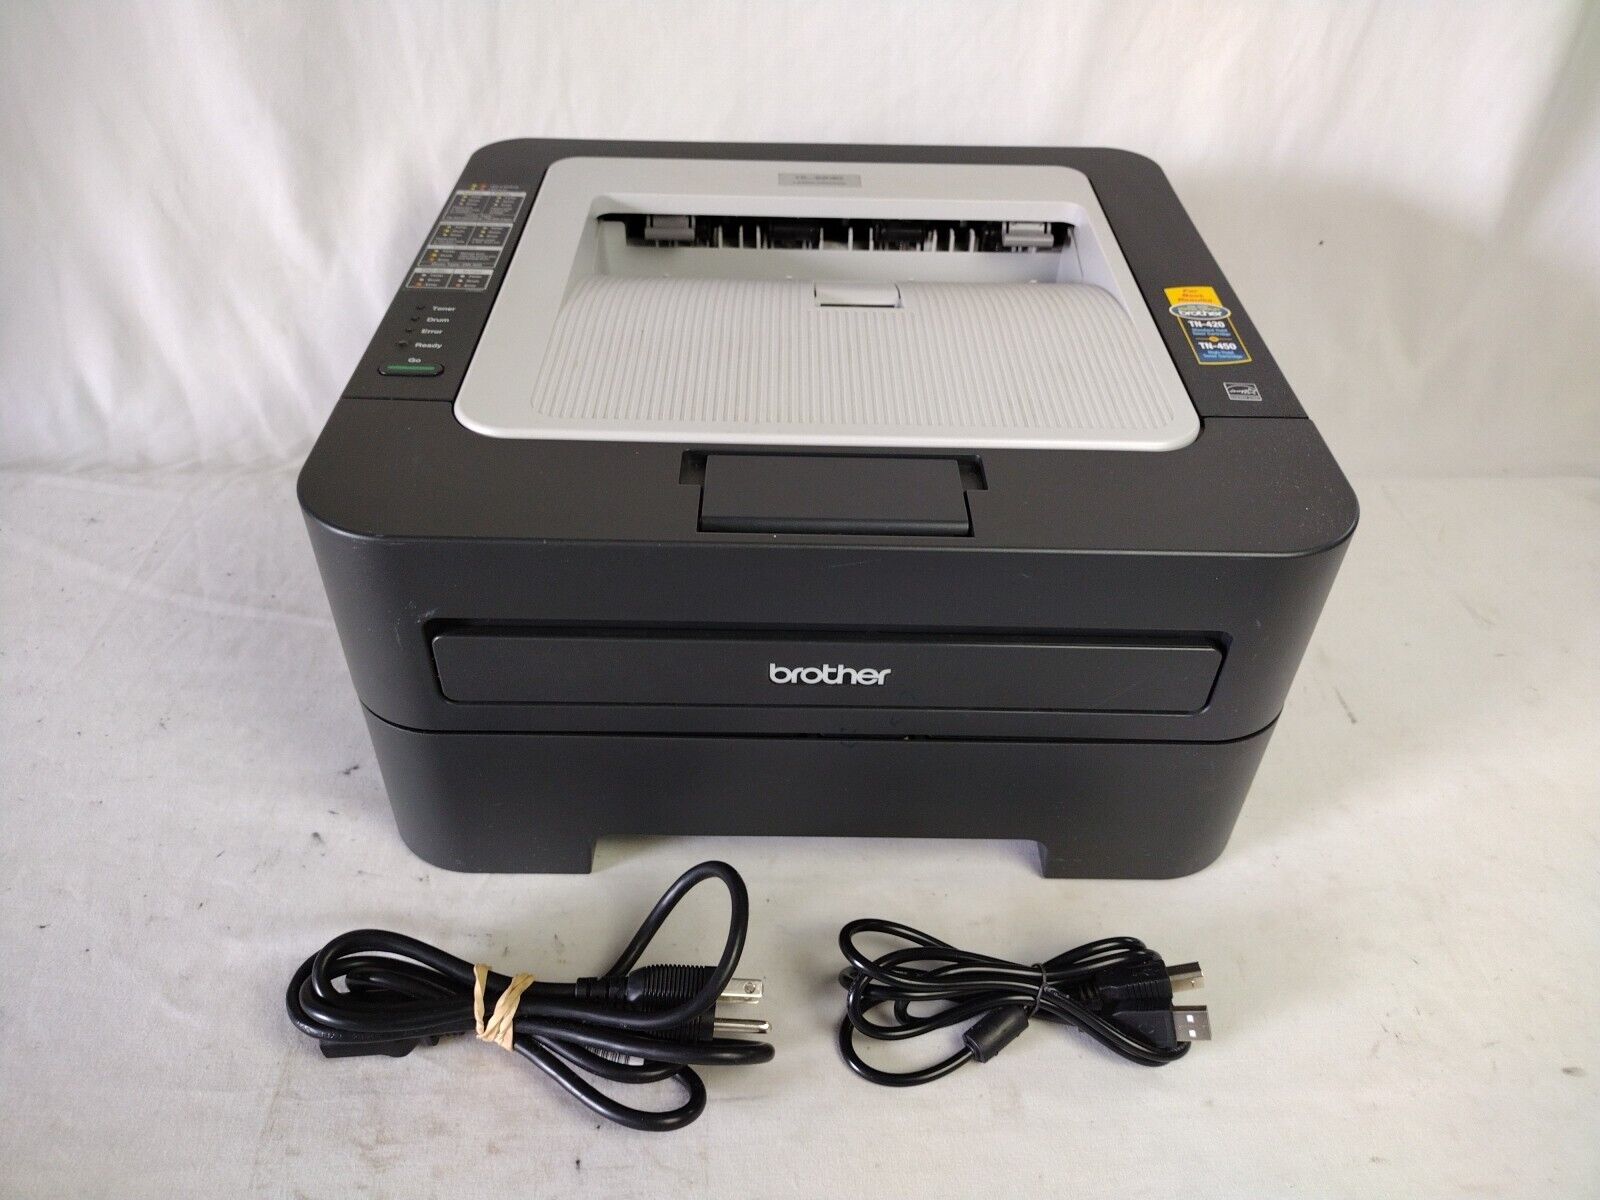 Brother HL-2230 Compact Desktop Laser Printer  - Tested Working, Includes Toner